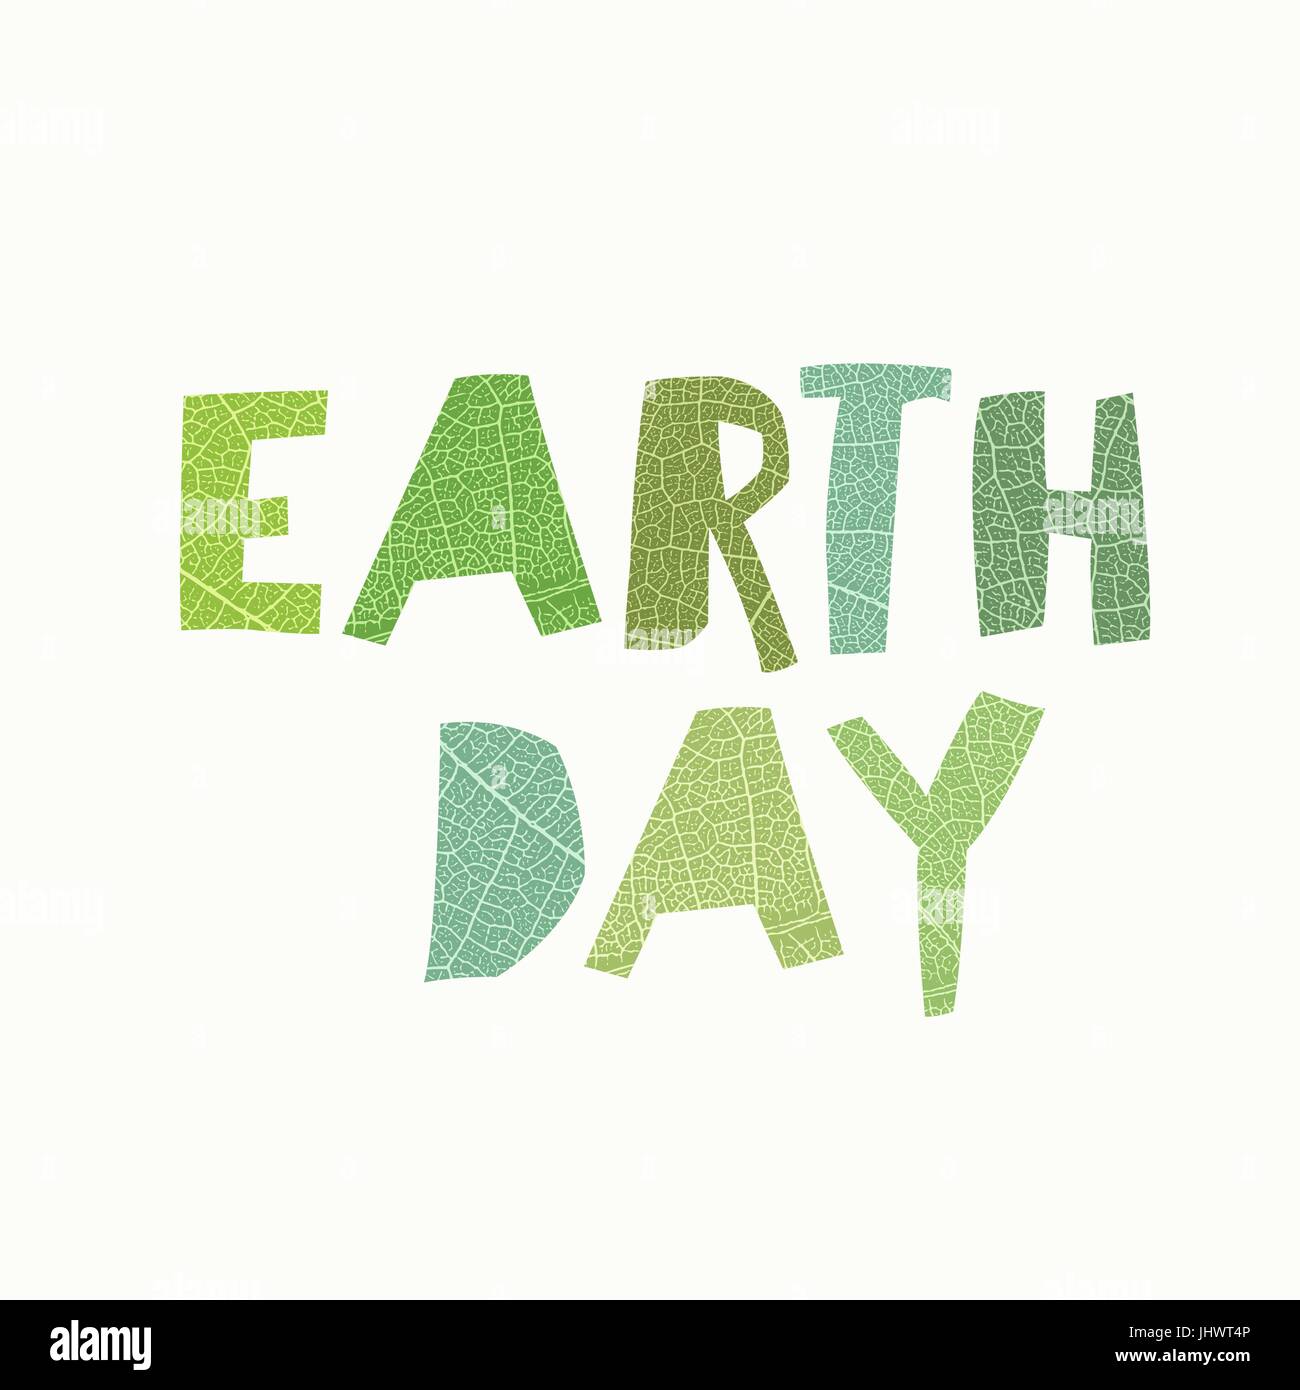 Earth Day Calebration Typografie. Blatt geschnitten Briefe. Abstrakte Natur unter dem Motto Logo zum feiern. Isoliert auf weißem Hintergrund. Stock Vektor